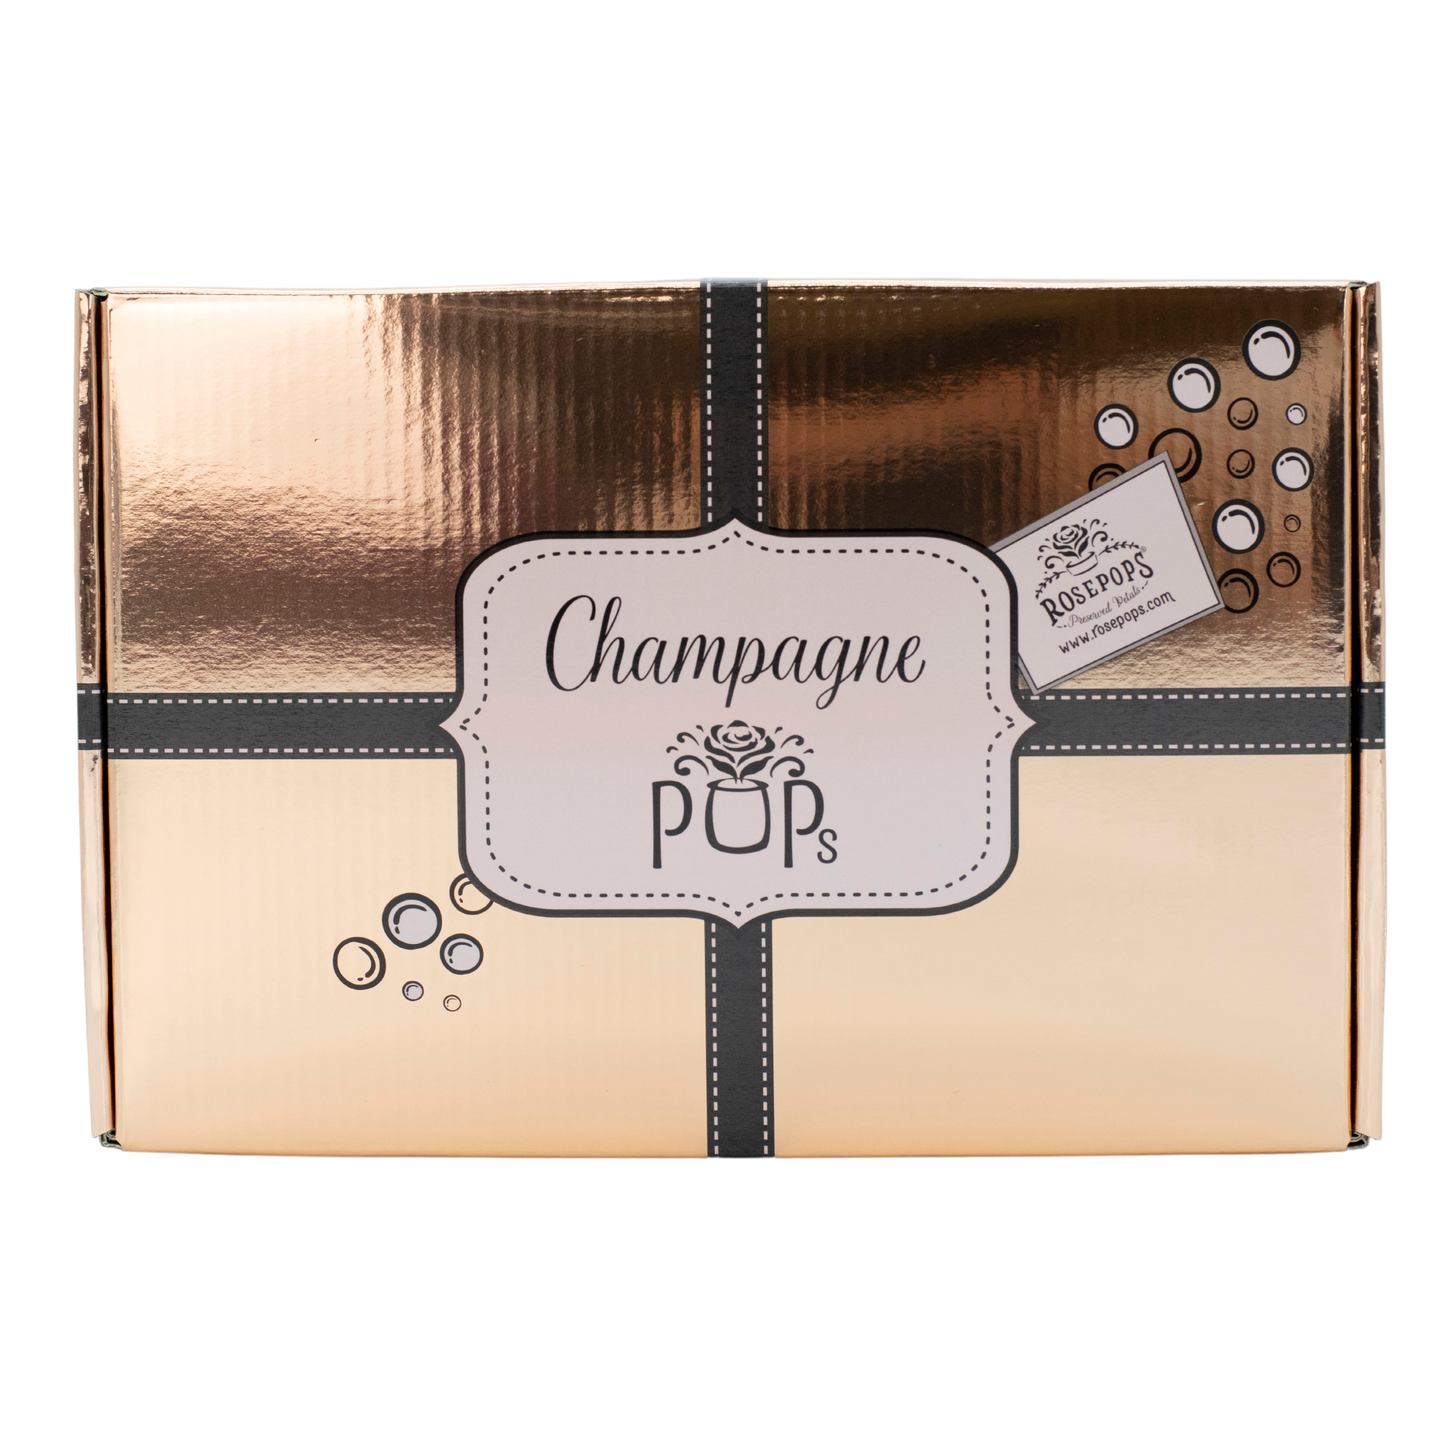 Flight of Rosés Champagne POPs Deluxe